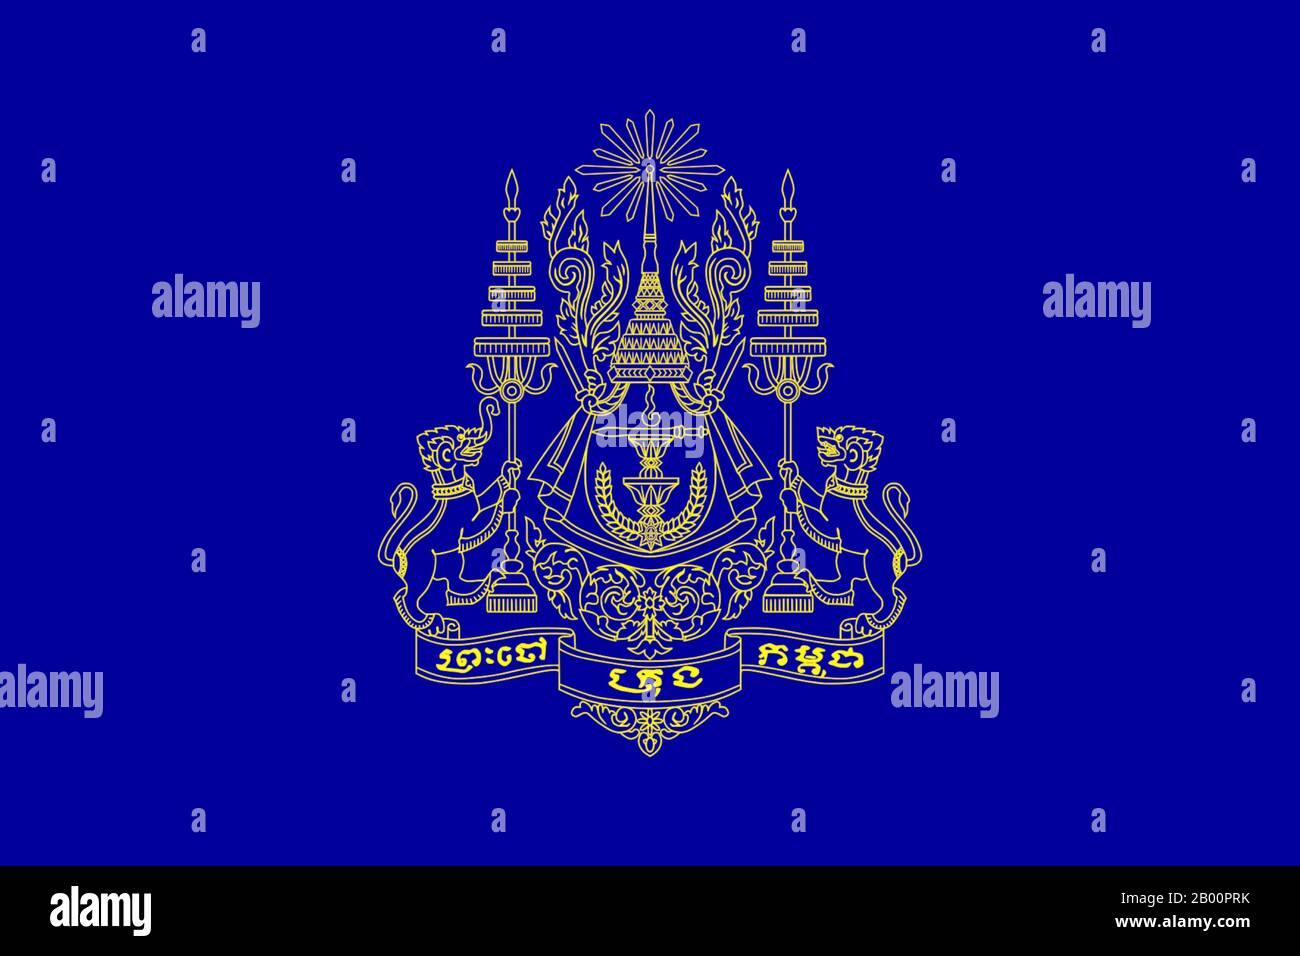 Kambodscha: Königlicher Standard des Königs von Kambodscha (1993 - Fortsetzung). Sodcan (CC BY 2.0 Lizenz). Der königliche Standard von Kambodscha trägt das königliche Wappen auf einem dunkelblauen Feld. Auf dem Wappen sind zwei Tiere dargestellt, die links ein gajasingha (ein Löwe mit einem Elefantenrüssel) und rechts ein singha oder ein Löwe sind. Unterstützt von den Tieren sind zwei königliche fünfstufige Schirme. Dazwischen befindet sich eine königliche Krone mit einem Lichtstrahl an der Spitze. Stockfoto